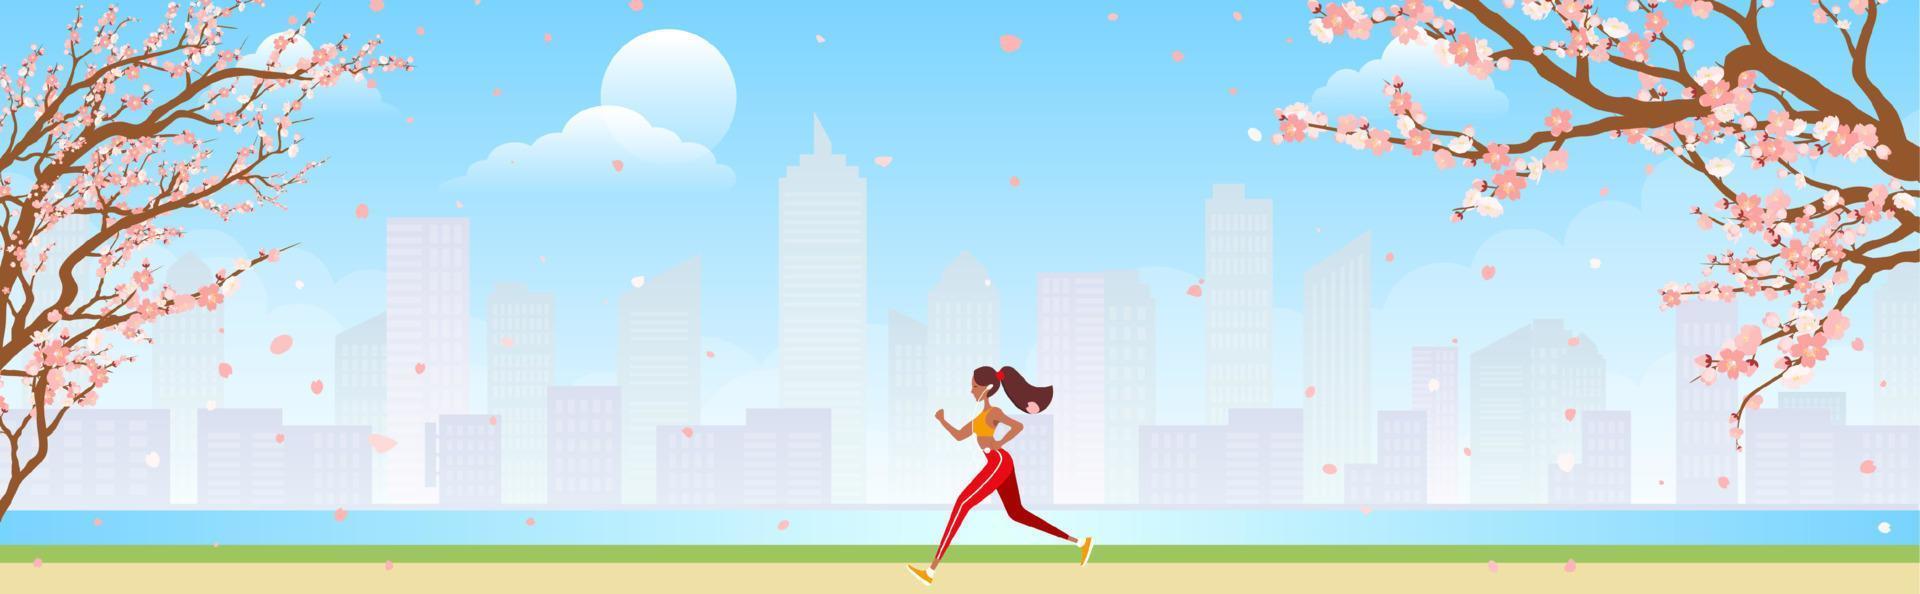 corredor entrenando al aire libre. chica deportiva corriendo por el camino del parque de la ciudad por la mañana. ilustración vectorial para la salud, estilo de vida activo, ejercicio matutino, concepto de jogging. vector